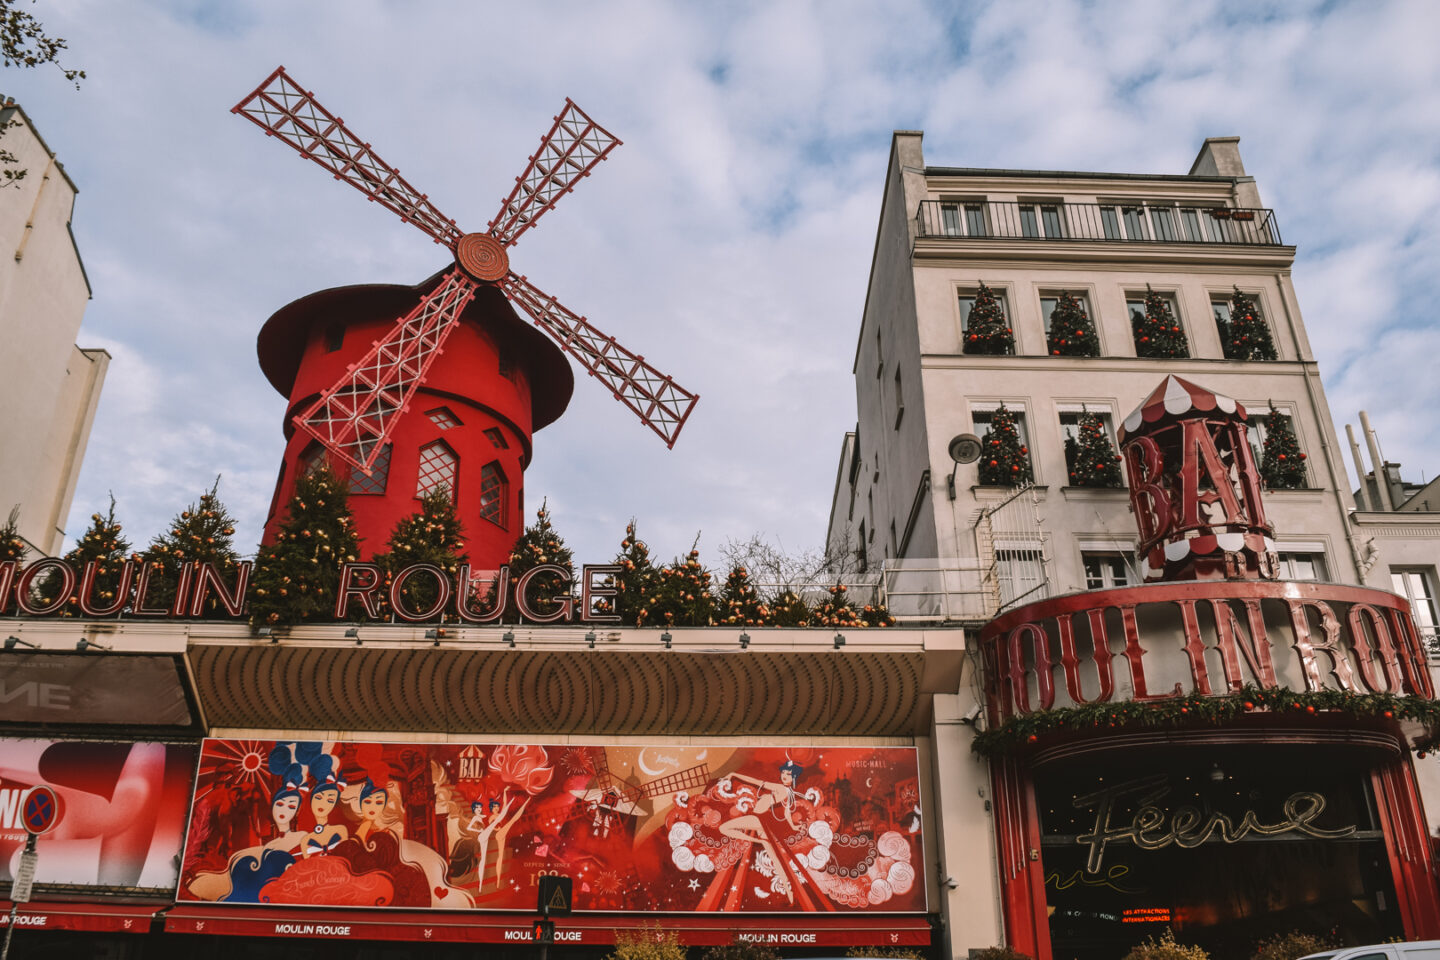 Moulin Rouge, Paris